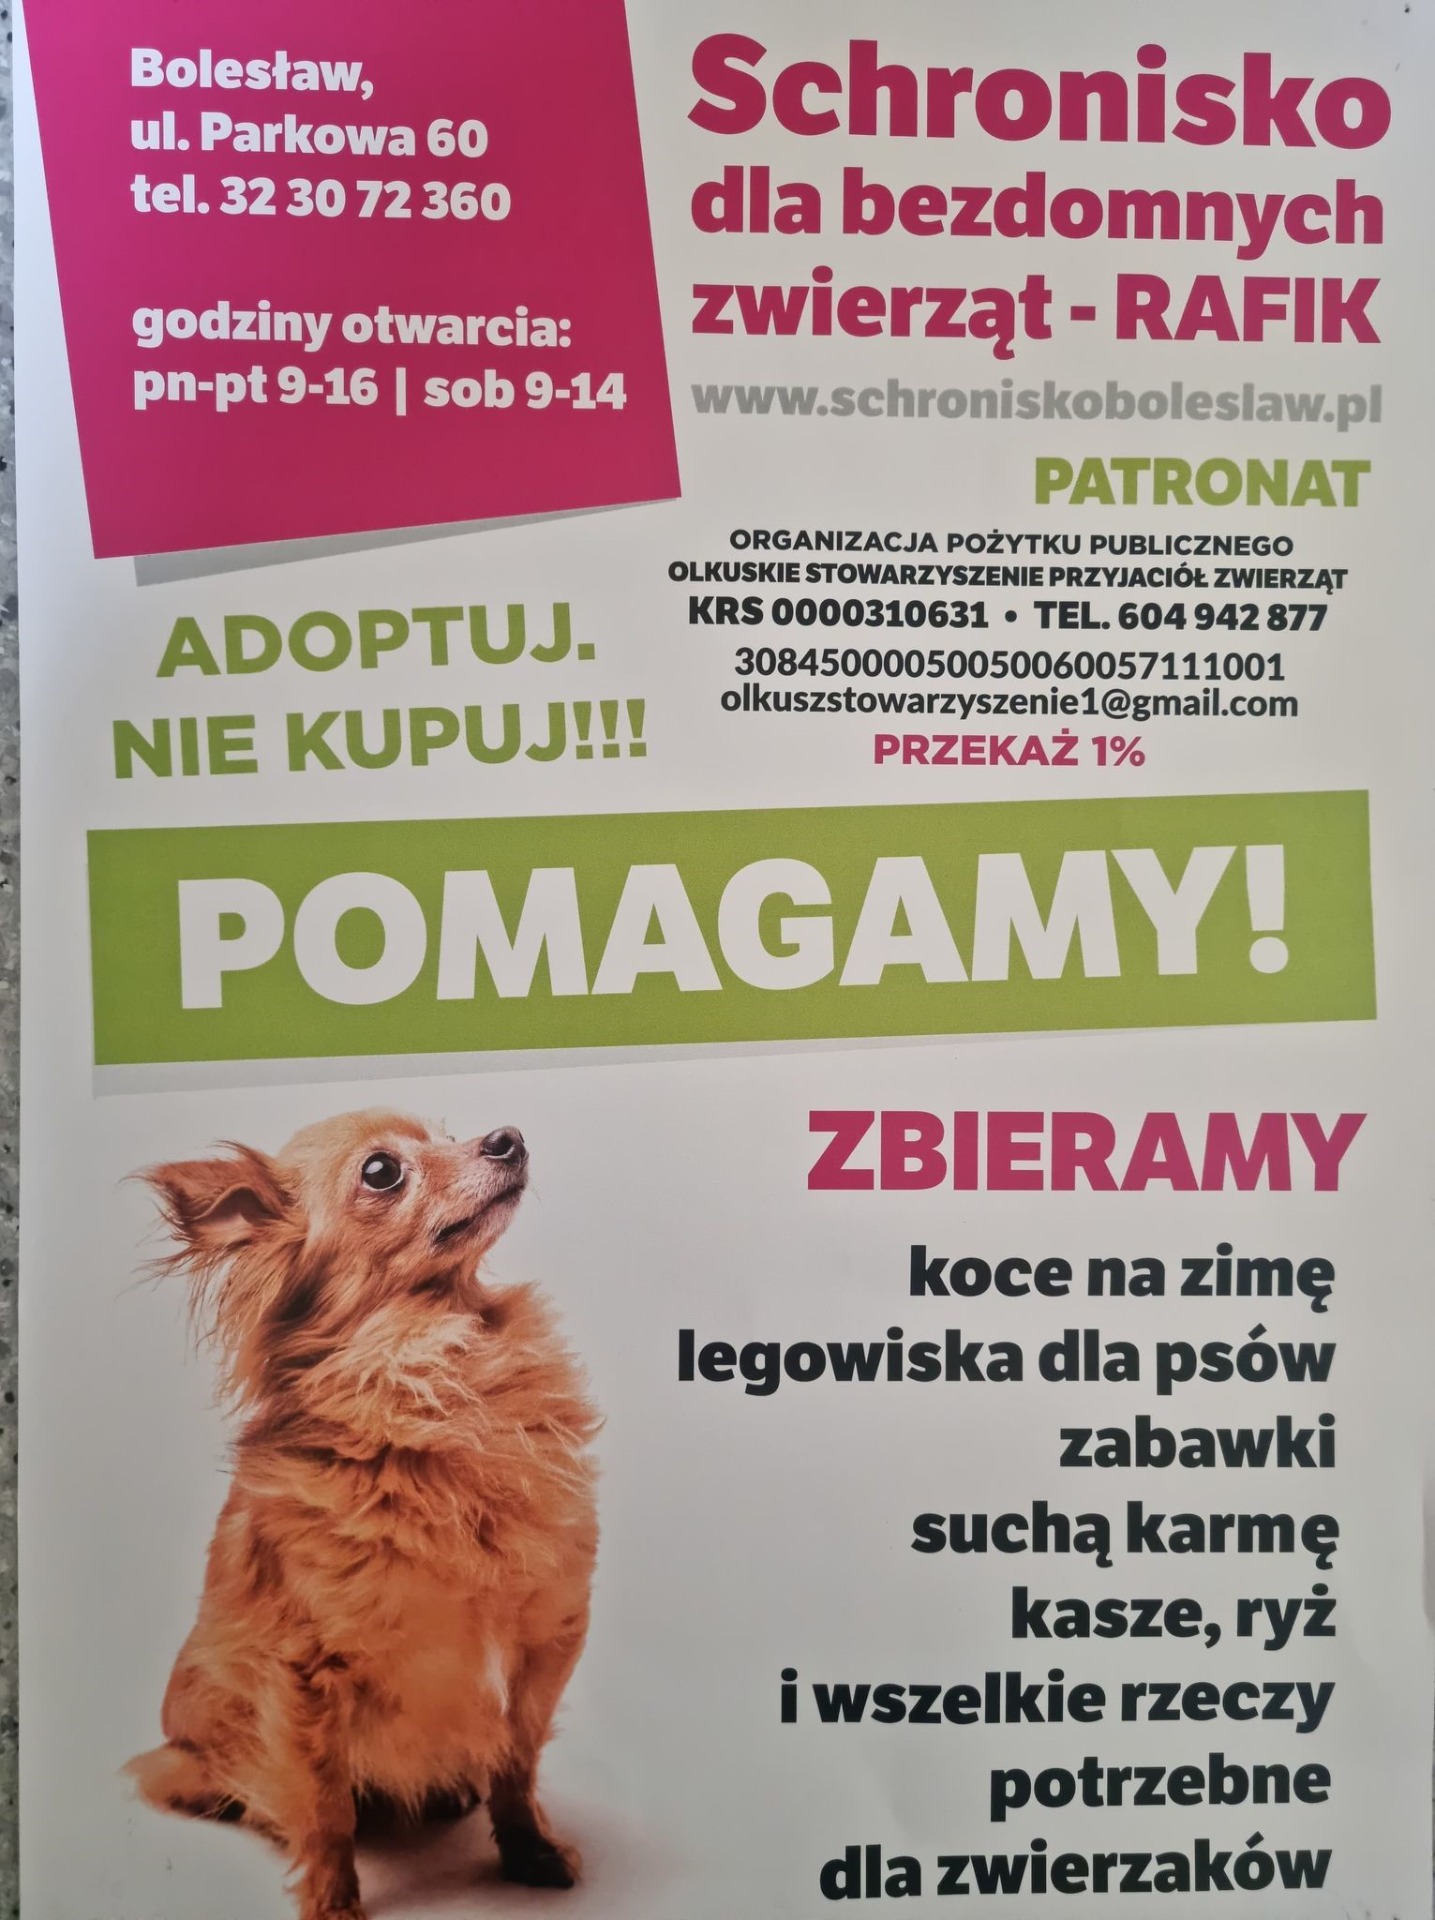 Szkolny Klub Wolontariusza organizuje zbiórkę dla podopiecznych schroniska dla bezdomnych zwierząt Rafik w Bolesławiu.  Zapraszamy do udziału :) - Obrazek 1